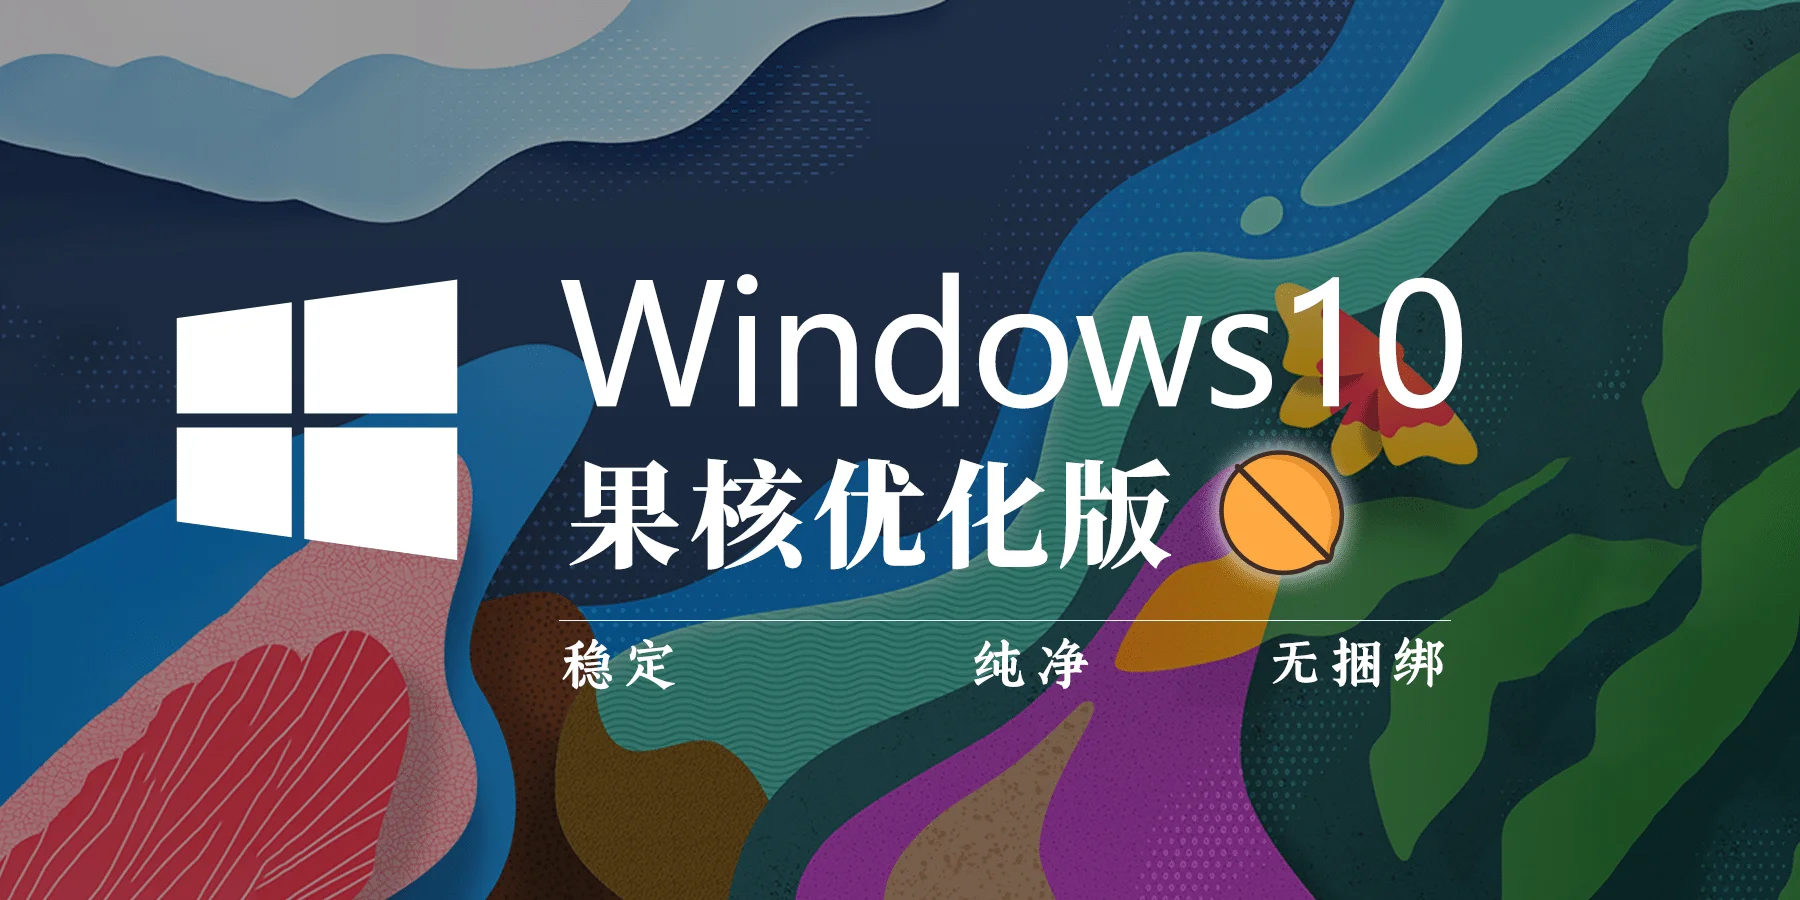 【果核】Windows 10 Pro 22H2(19045.2075) 优化精简版/极度精简版